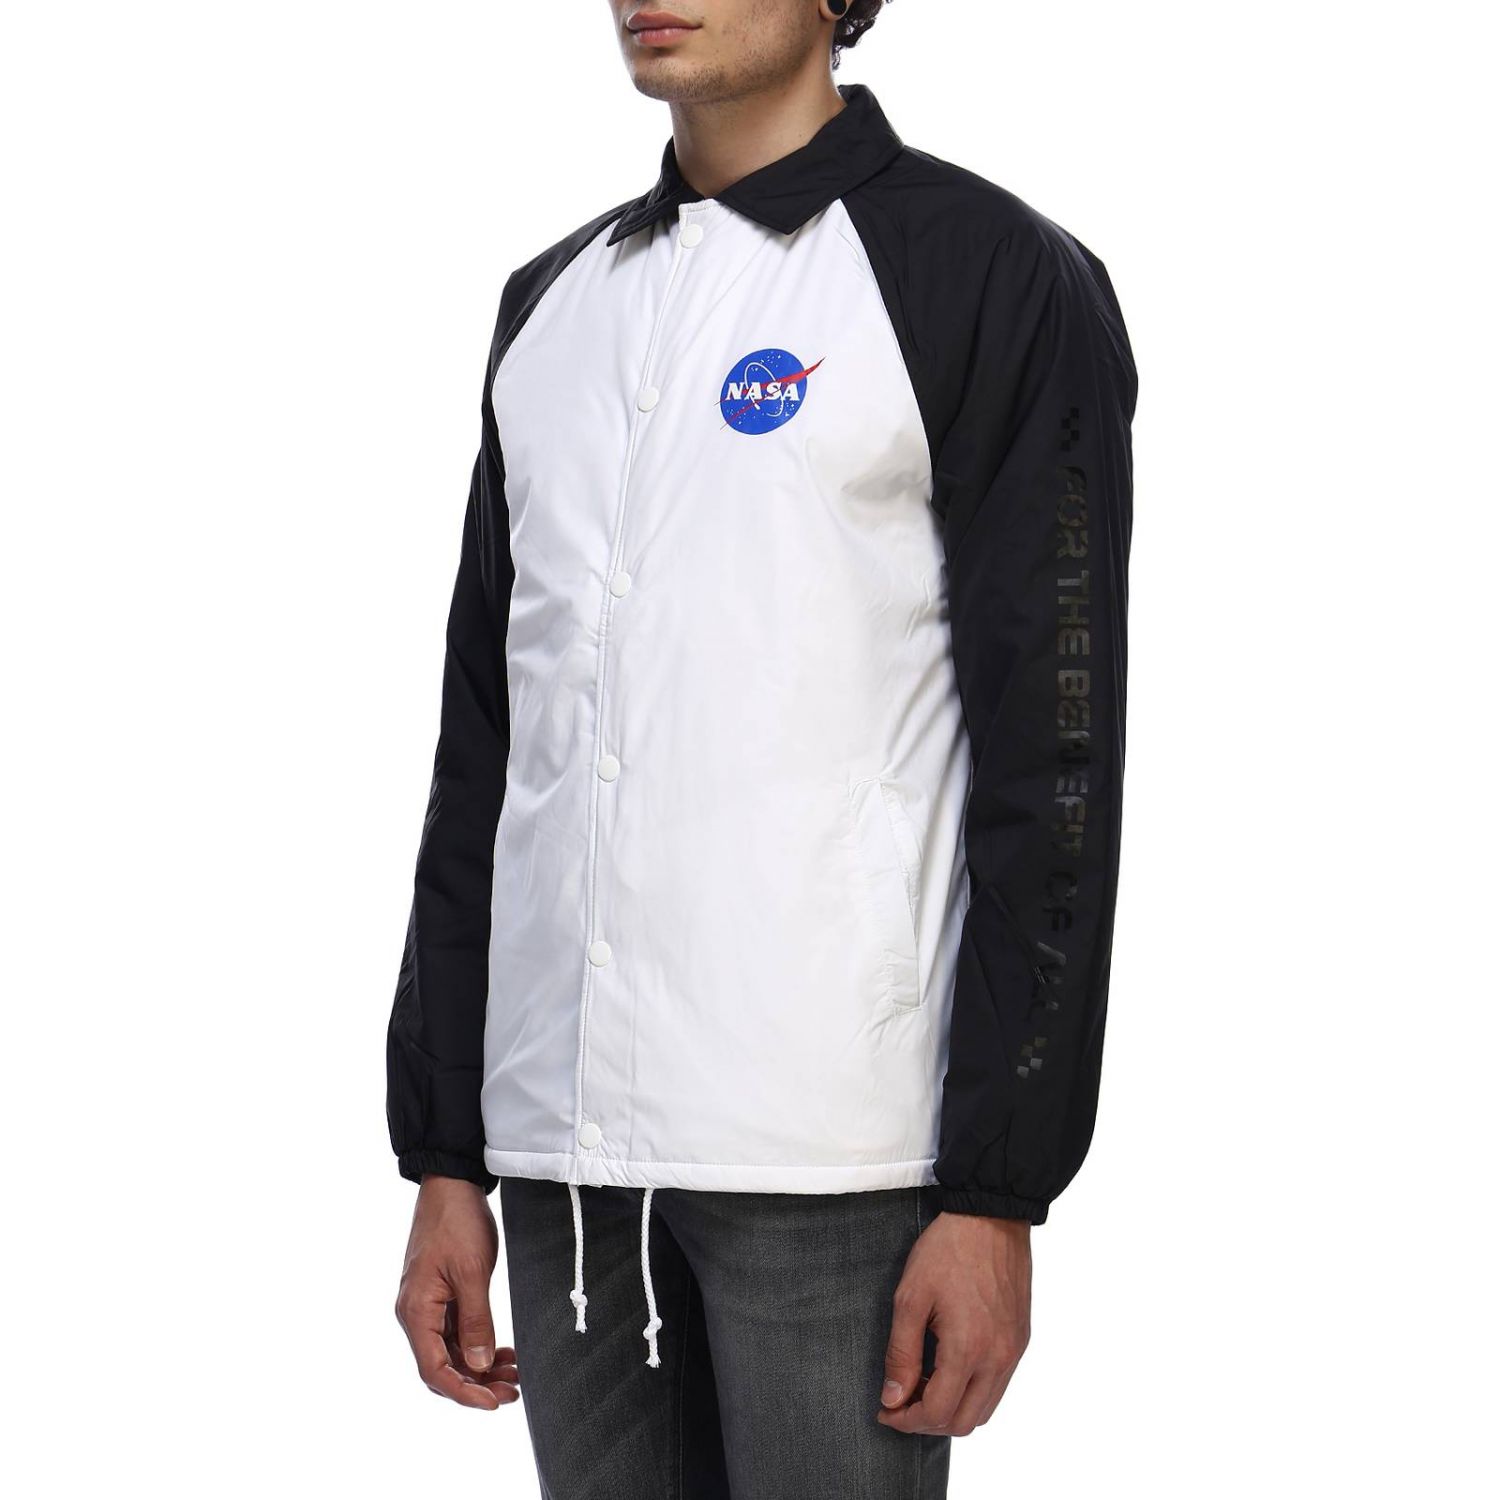 Vans Outlet: NASA jacket super insulating and water repellant NASA 